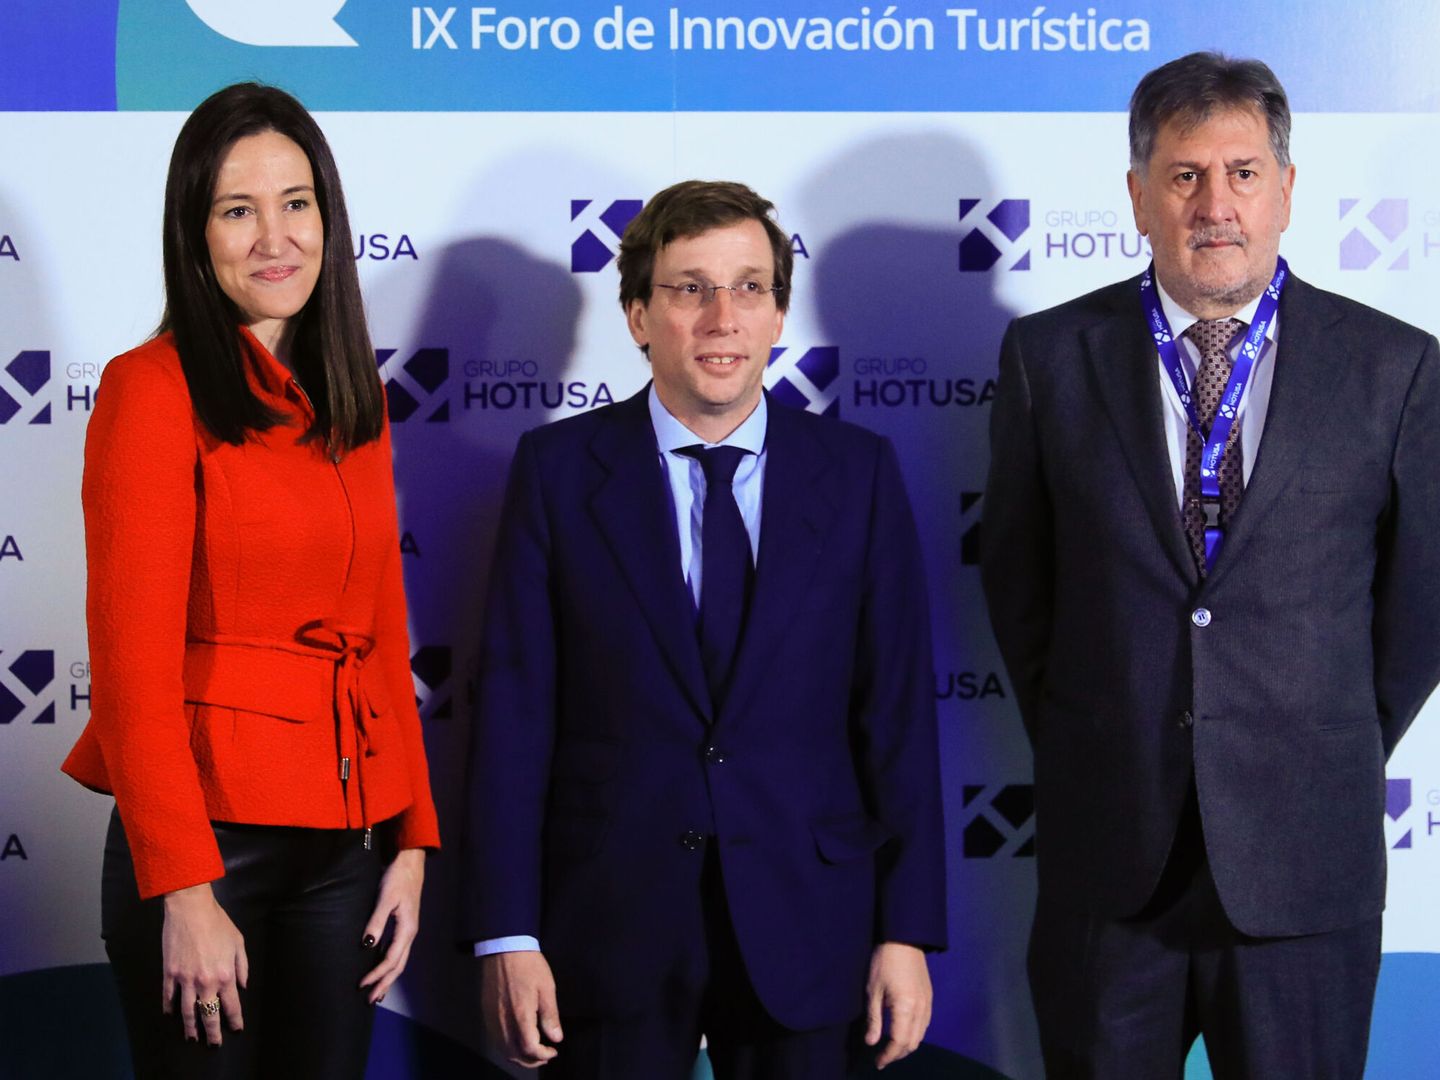 El alcalde de Madrid, José Luis Martínez-Almeida, junto al presidente de Hotusa, Amancio López, en el foro organizado por Hotusa el pasado enero, previo a Fitur.